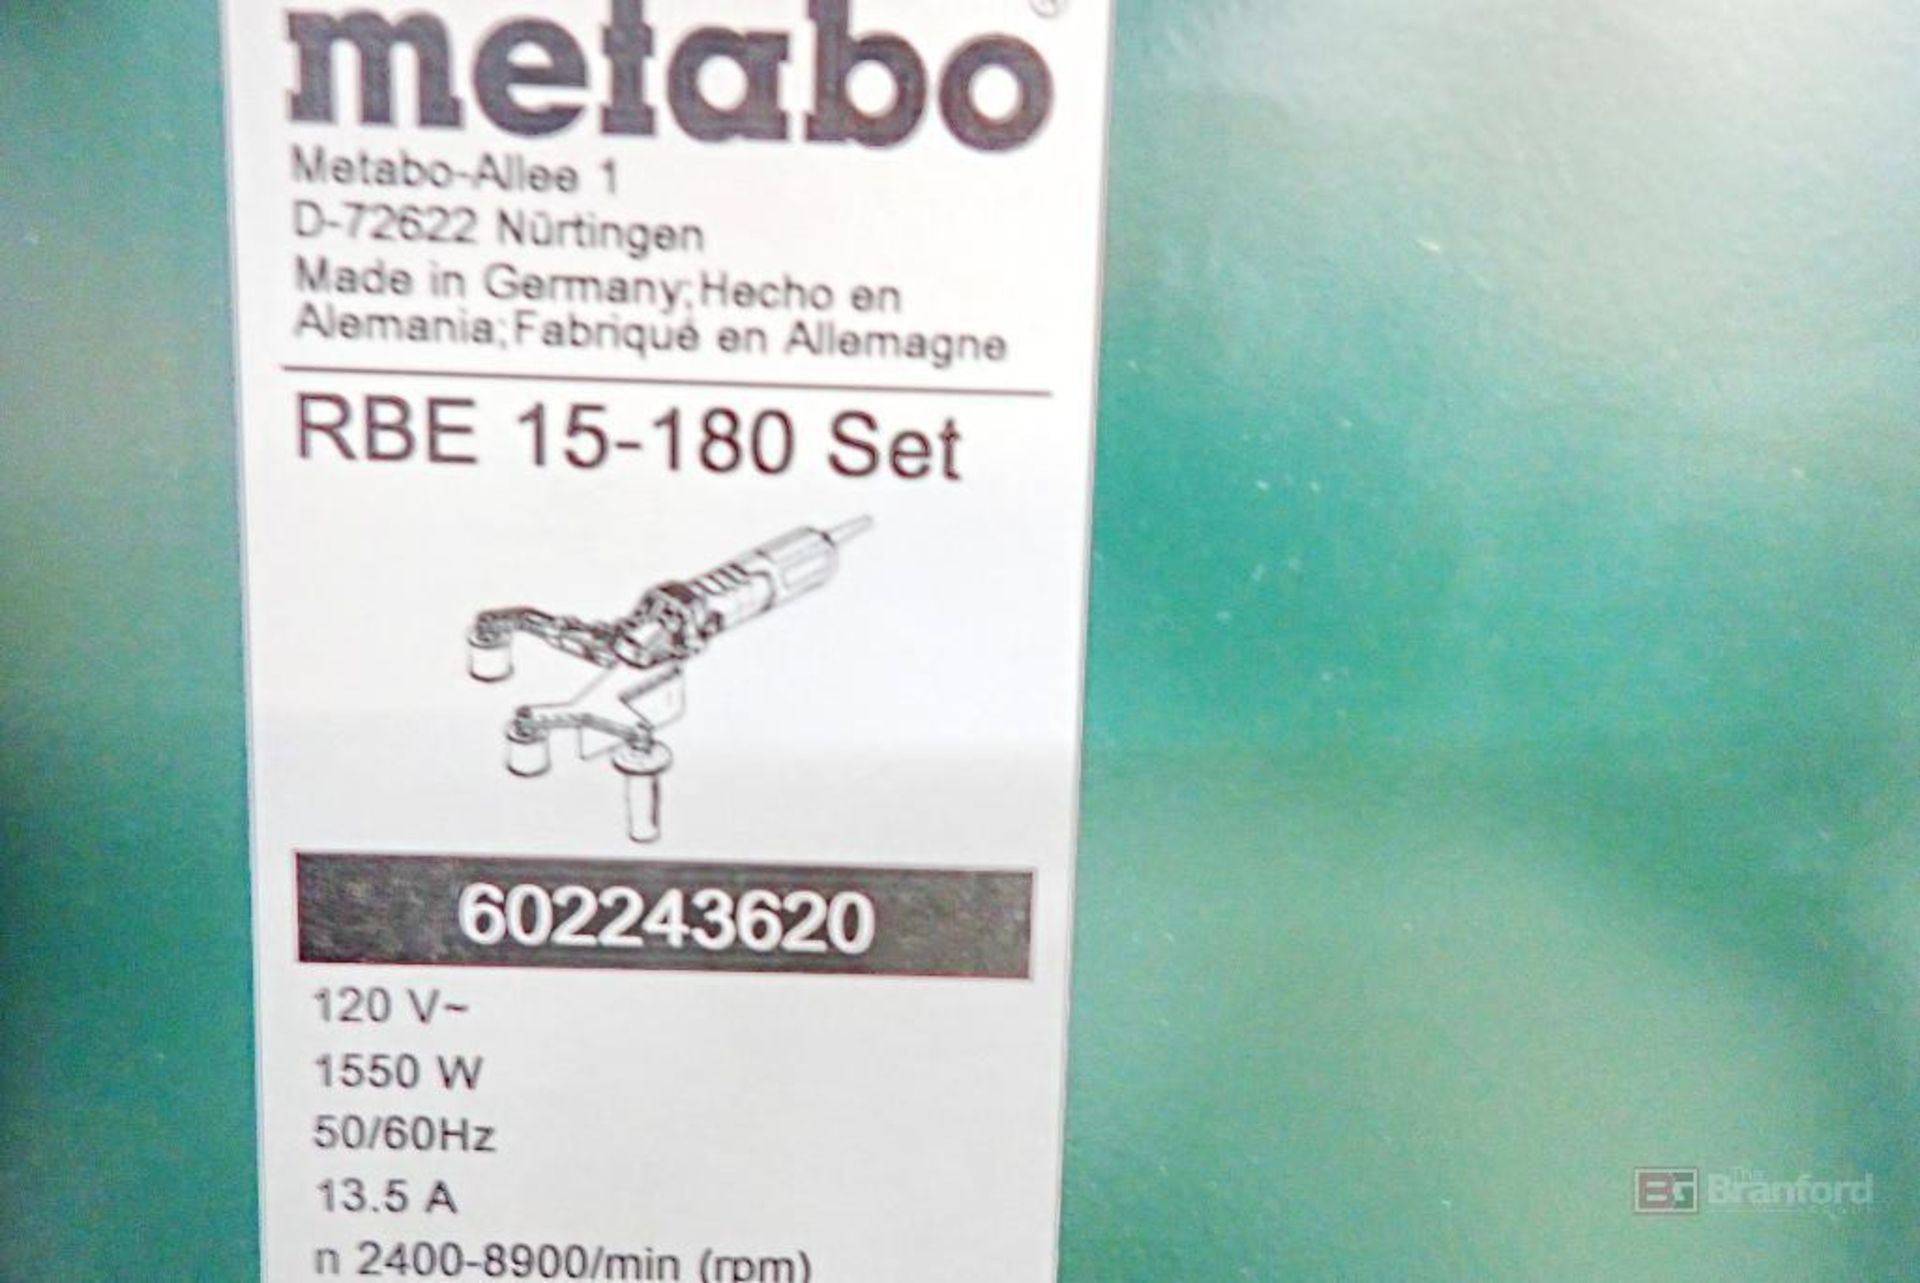 Metabo RBE 15-180 Tube Belt Sander Set - Image 4 of 5